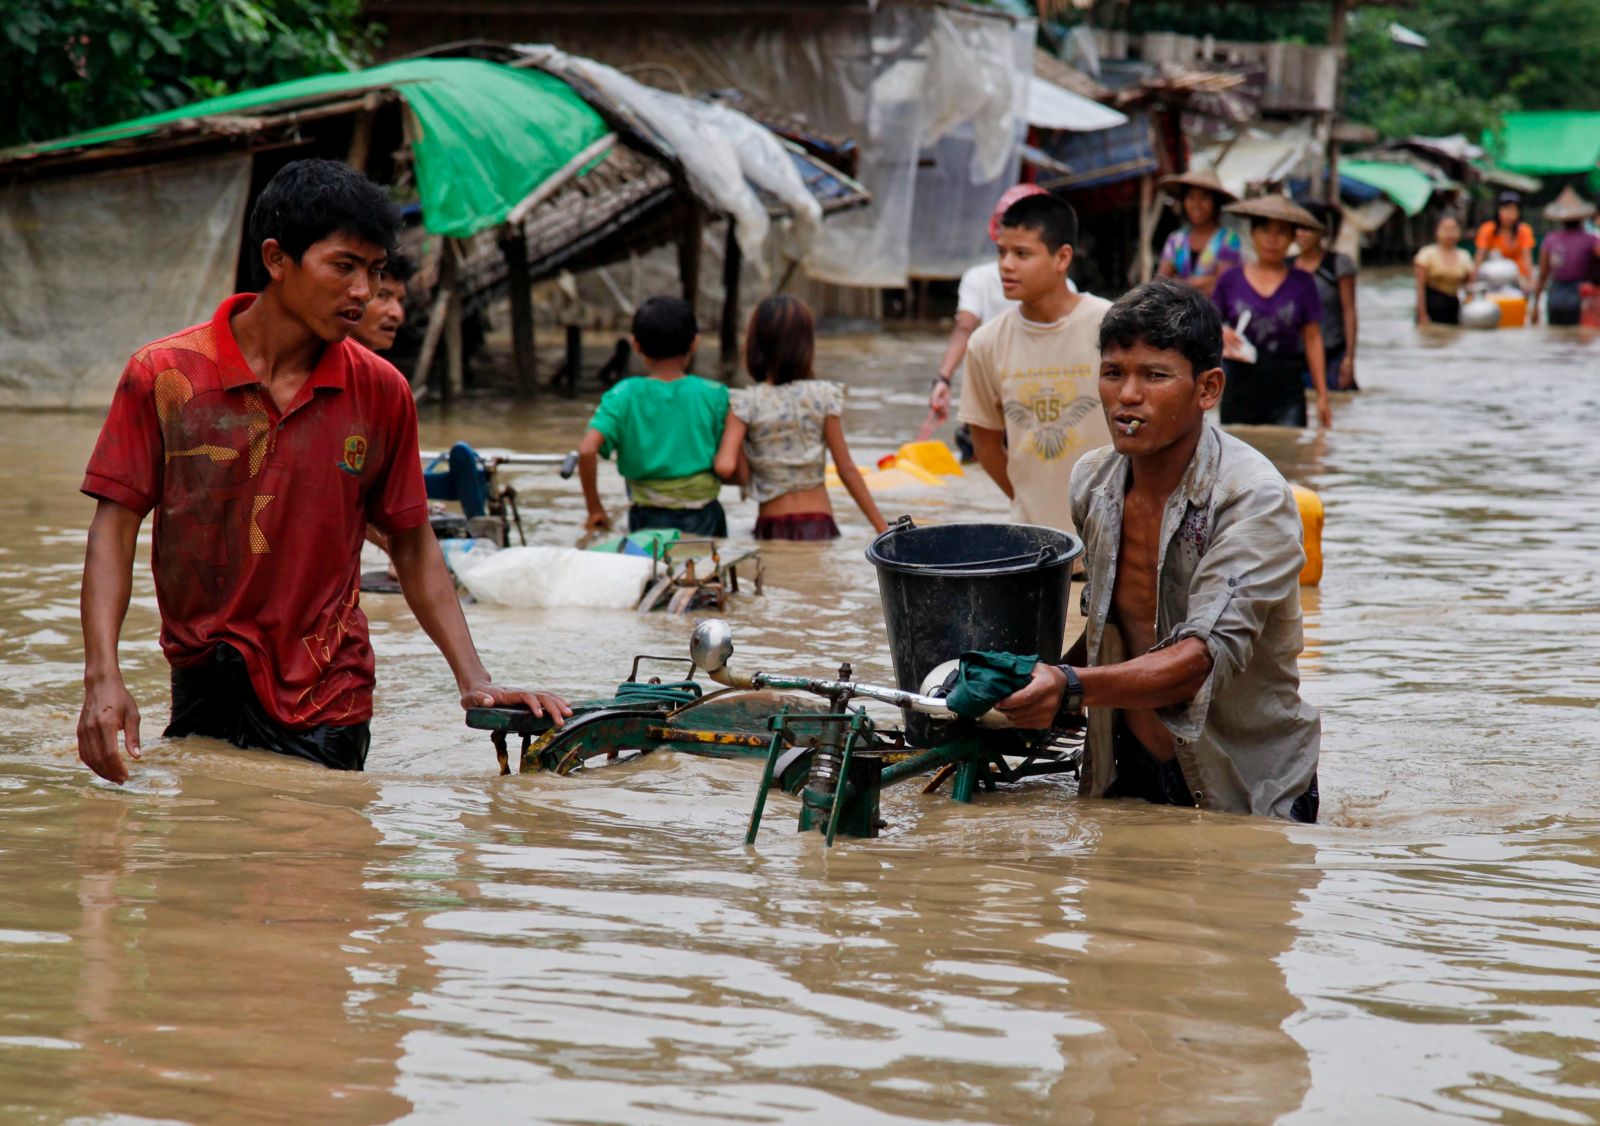 မြန်မာနိုင်ငံတွင် ရာသီဥတုပြောင်းလဲမှုကြောင့်ဖြစ်ရသော ဘေးအန္တရာယ်များကြောင့် လူအများနေရပ်ရွှေ့ပြောင်းမှု နှင့် အခြားပြဿနာများကို ဖြေရှင်ပေ